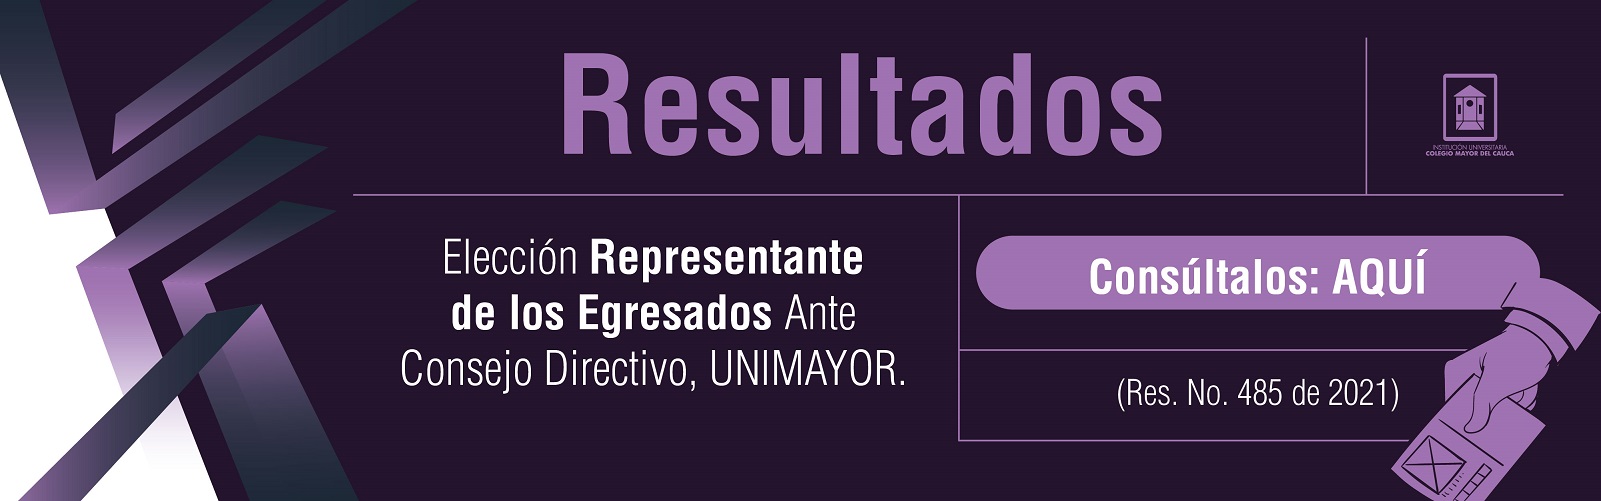 Banner Elecc Rep Egresados